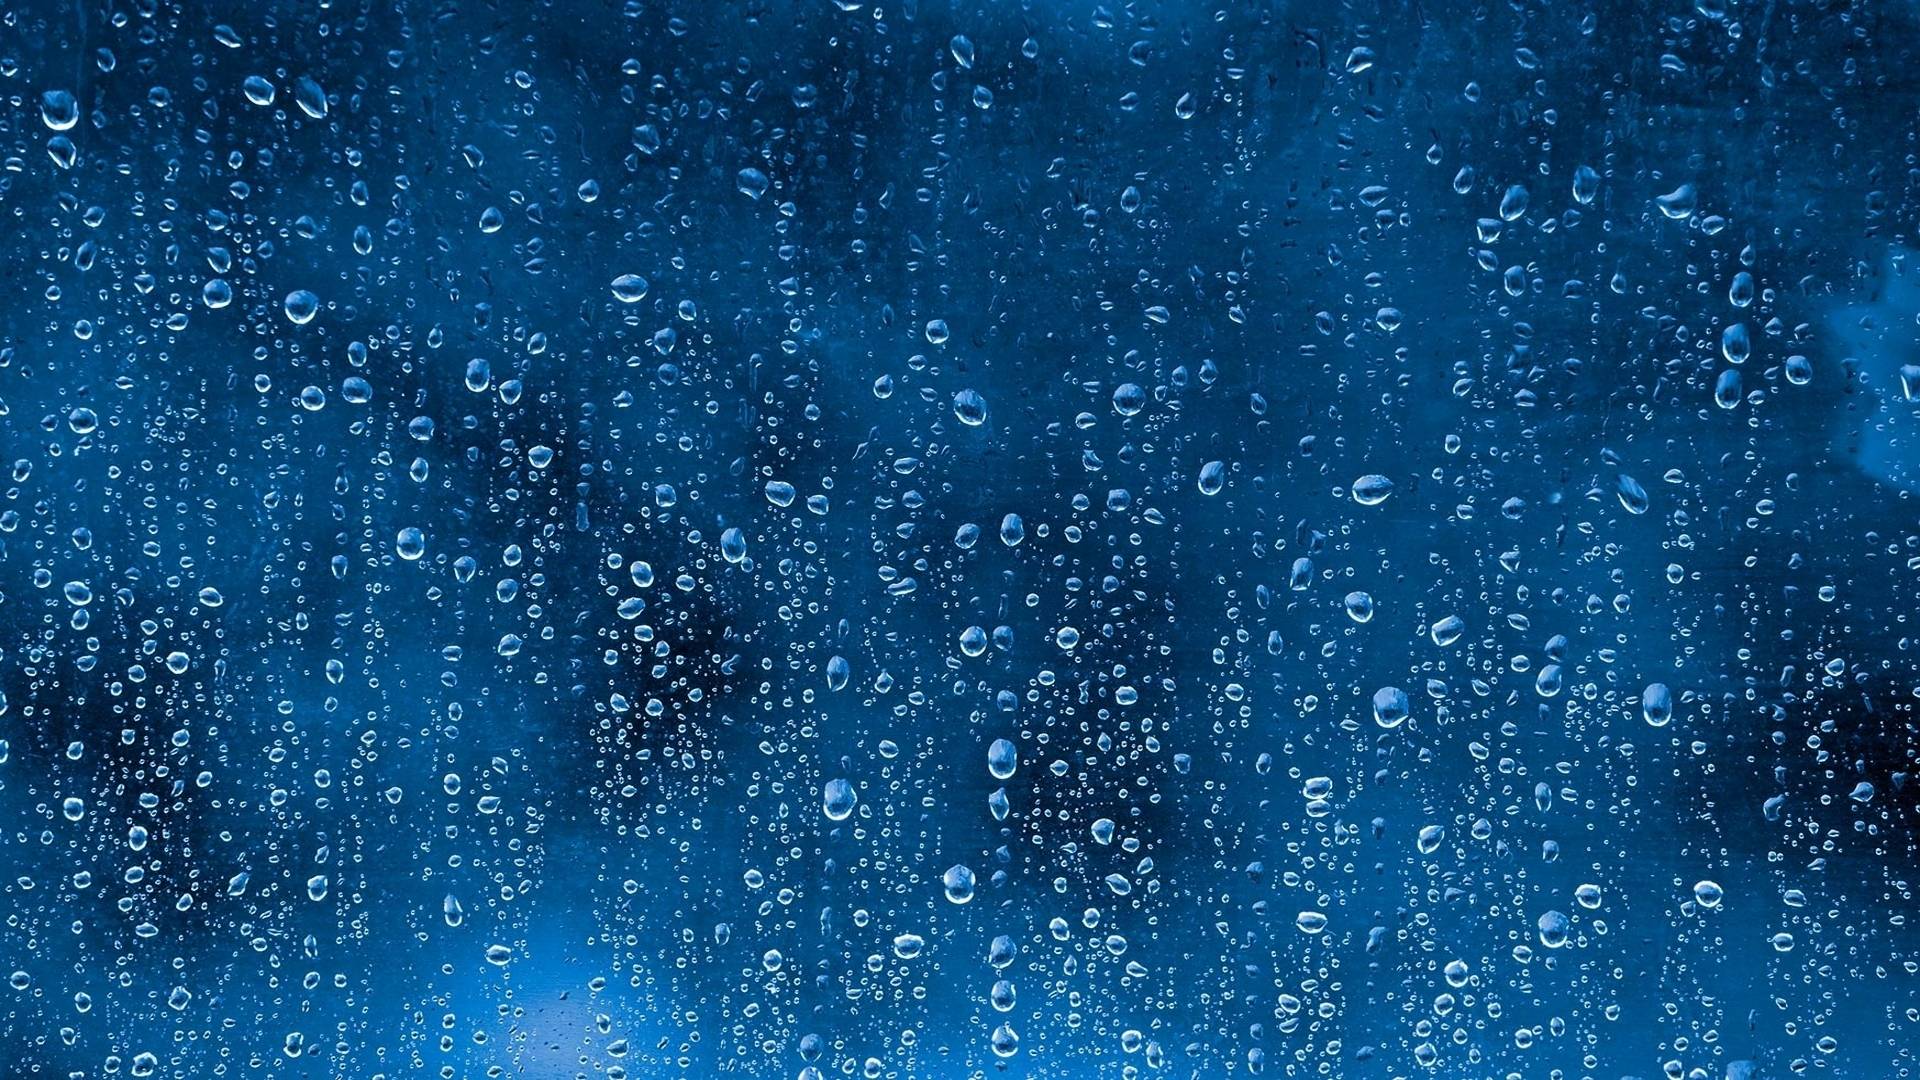 Angelina Jolie Desktop Rain Wallpaper